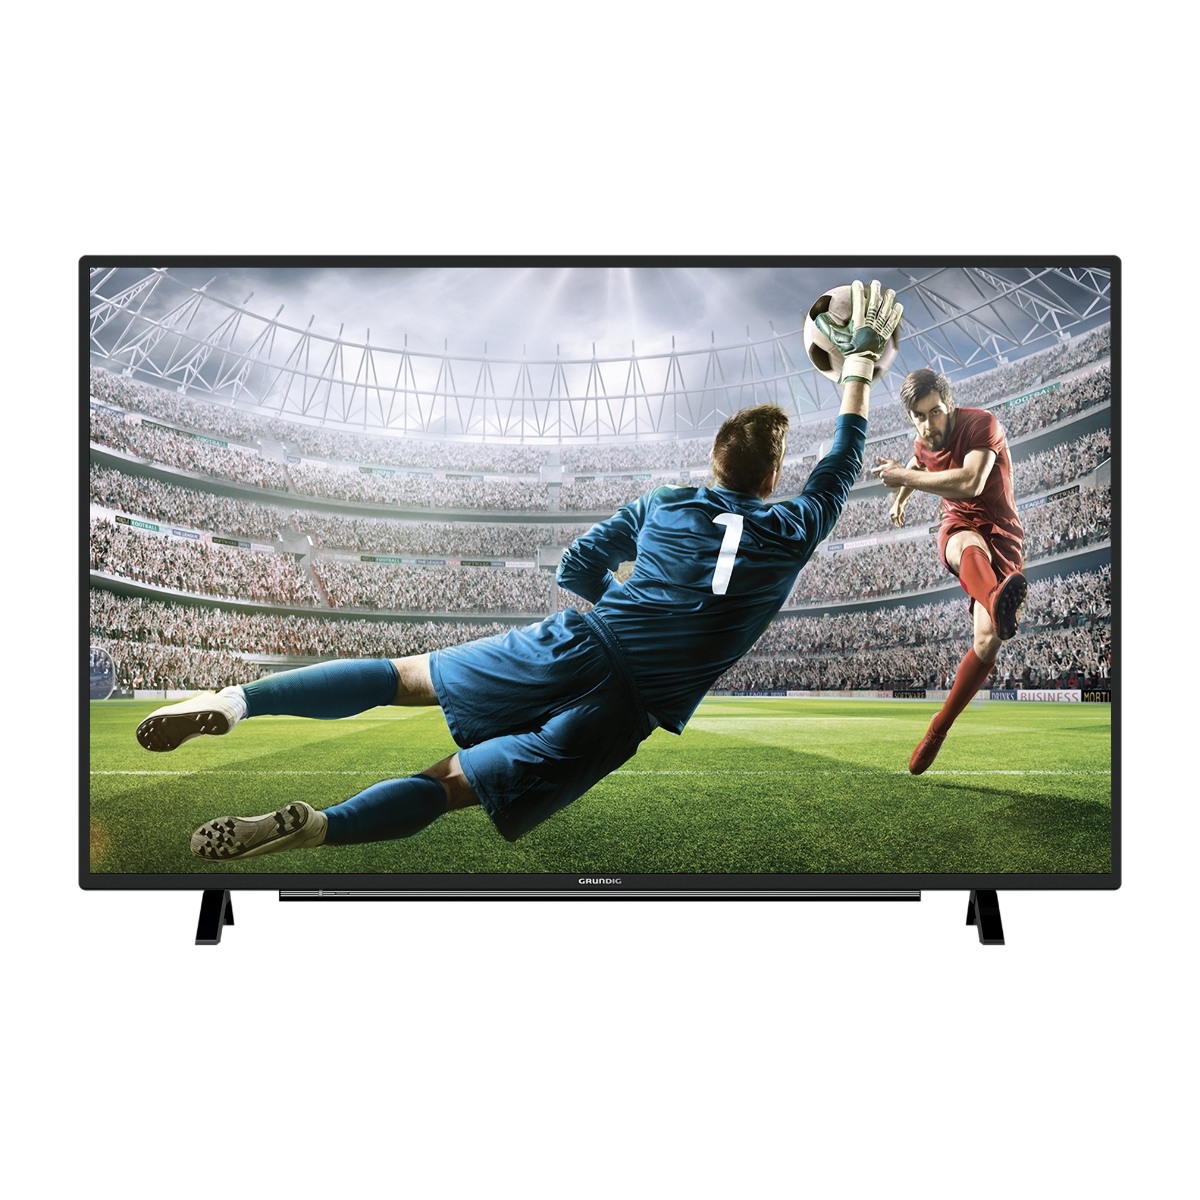 GRUNDIG FULL HD LED TV 32VLE5730BN -